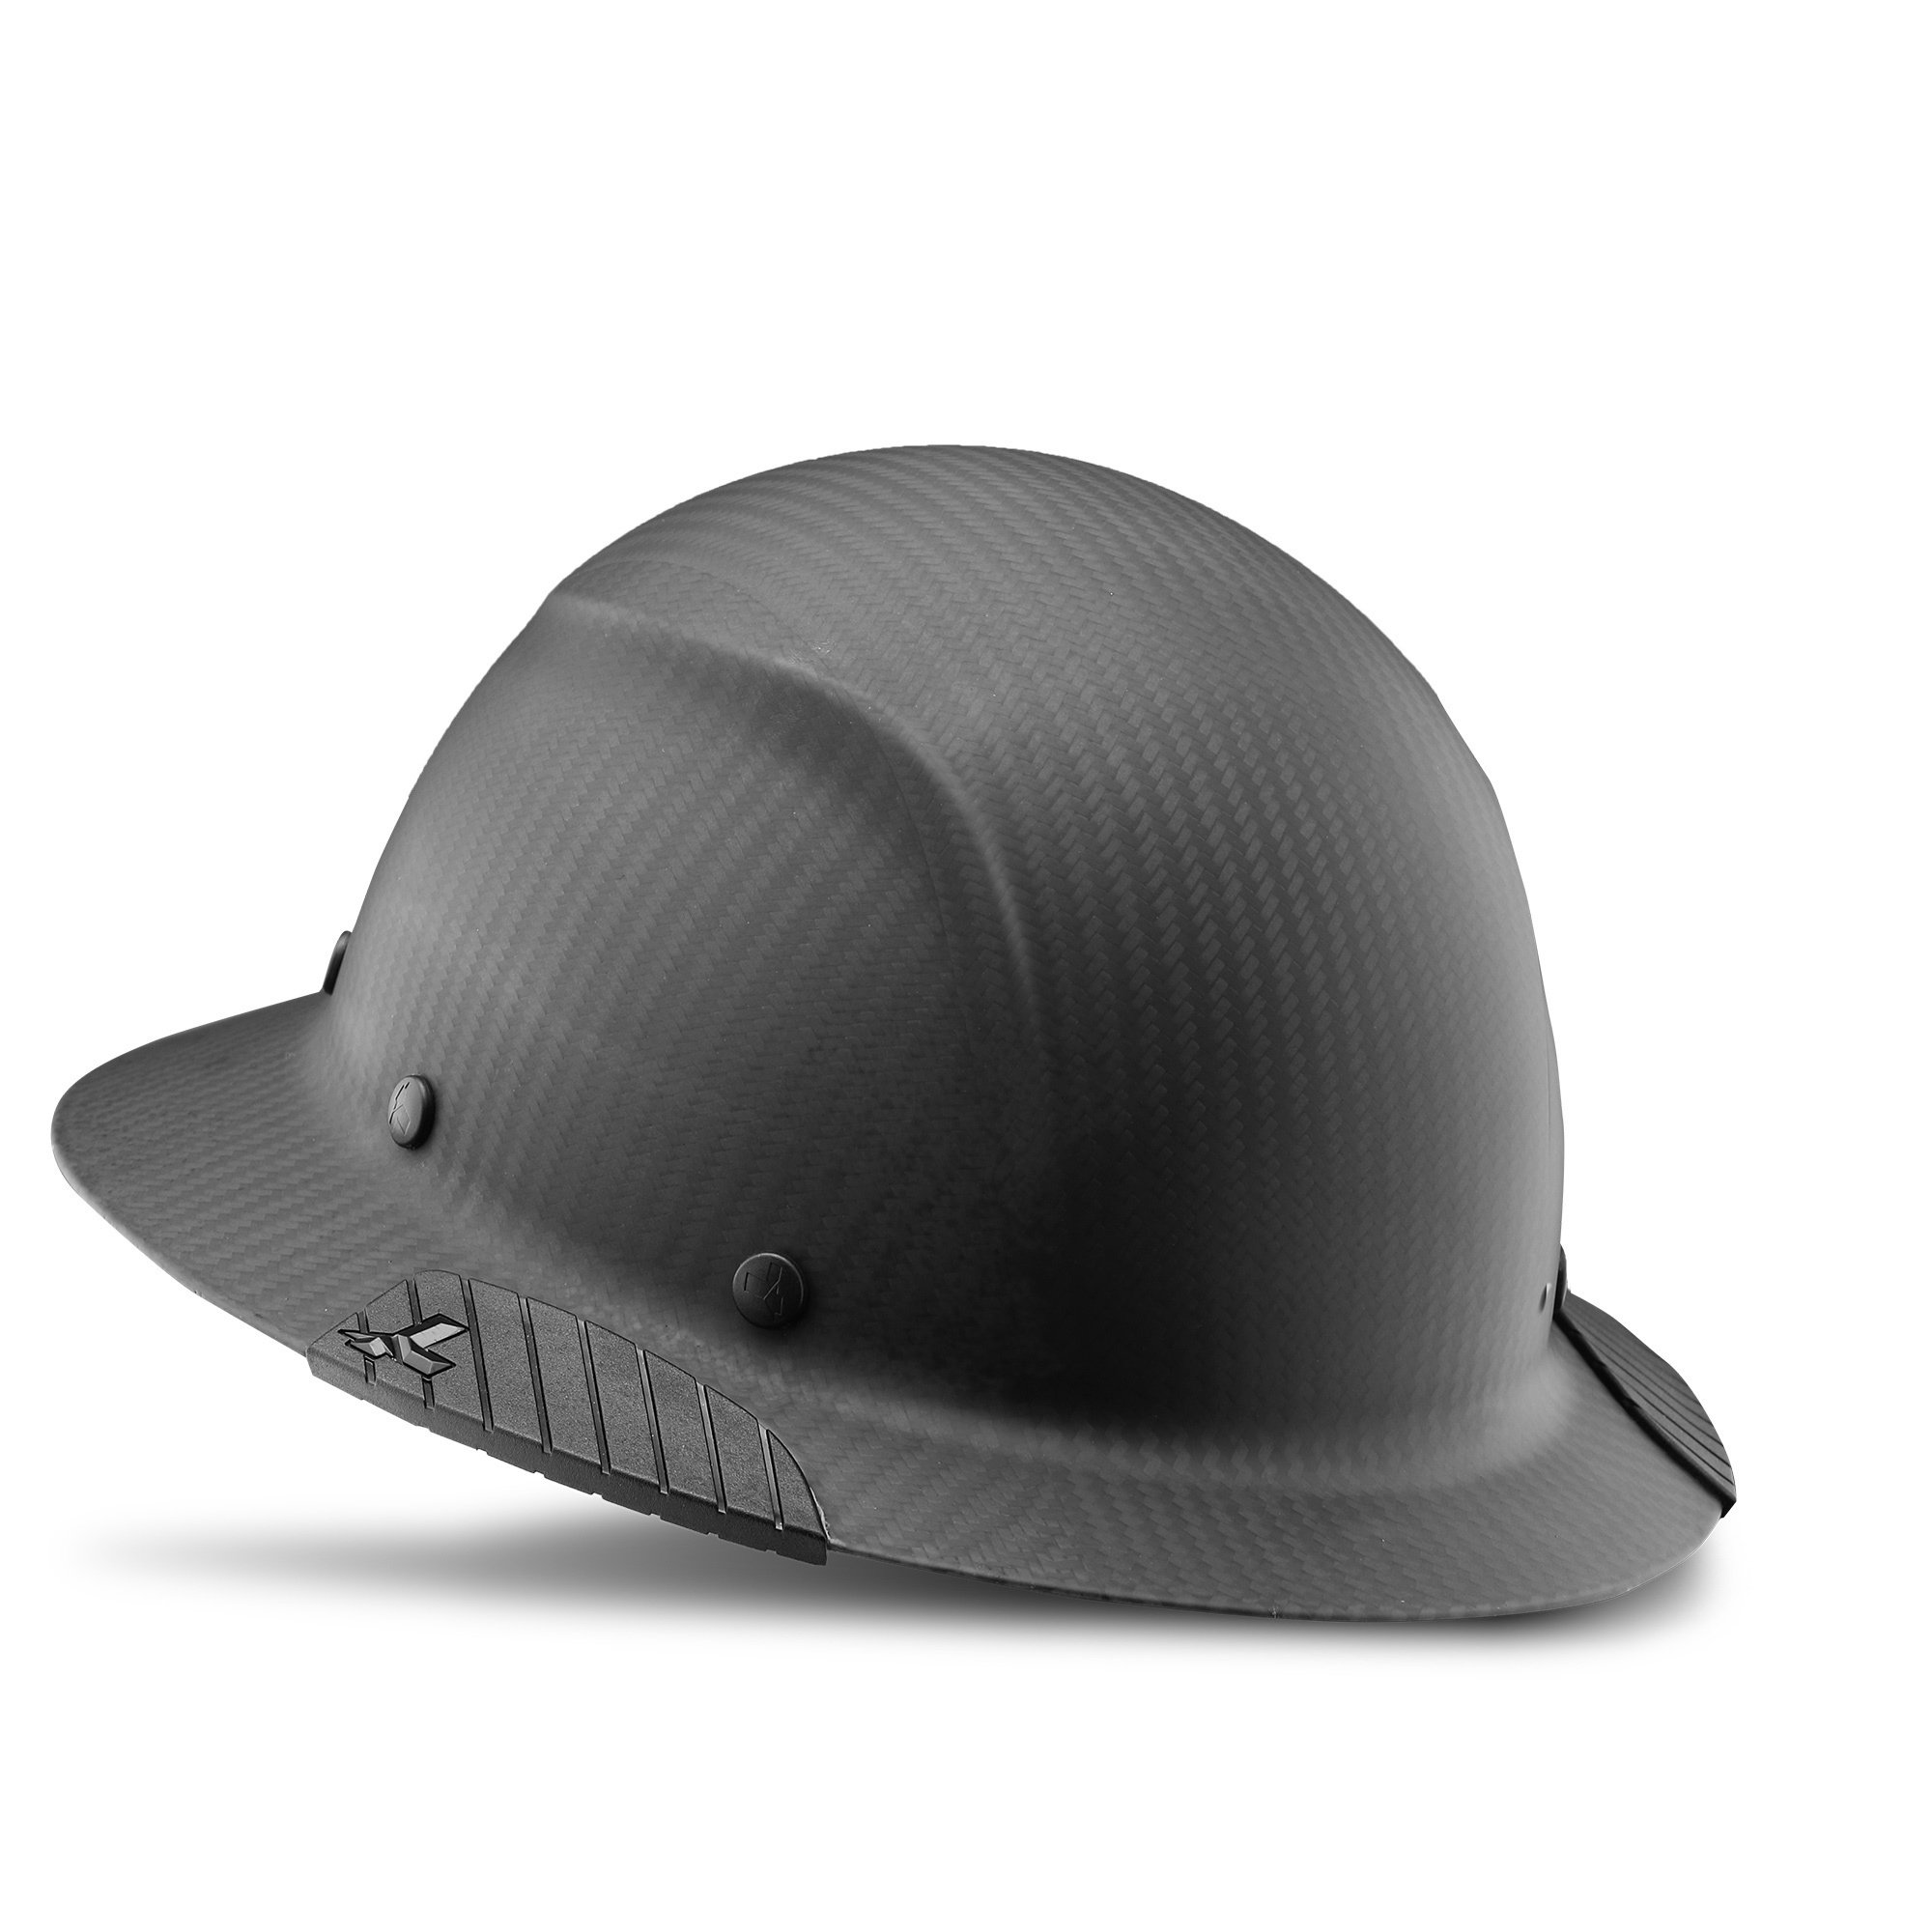 LIFT Safety, DAX Carbon Fiber Full Brim (Matte Black), Hard Hat Style Full Brim, Hat Size Adjustable, Color Other, Model HDFM-17KG